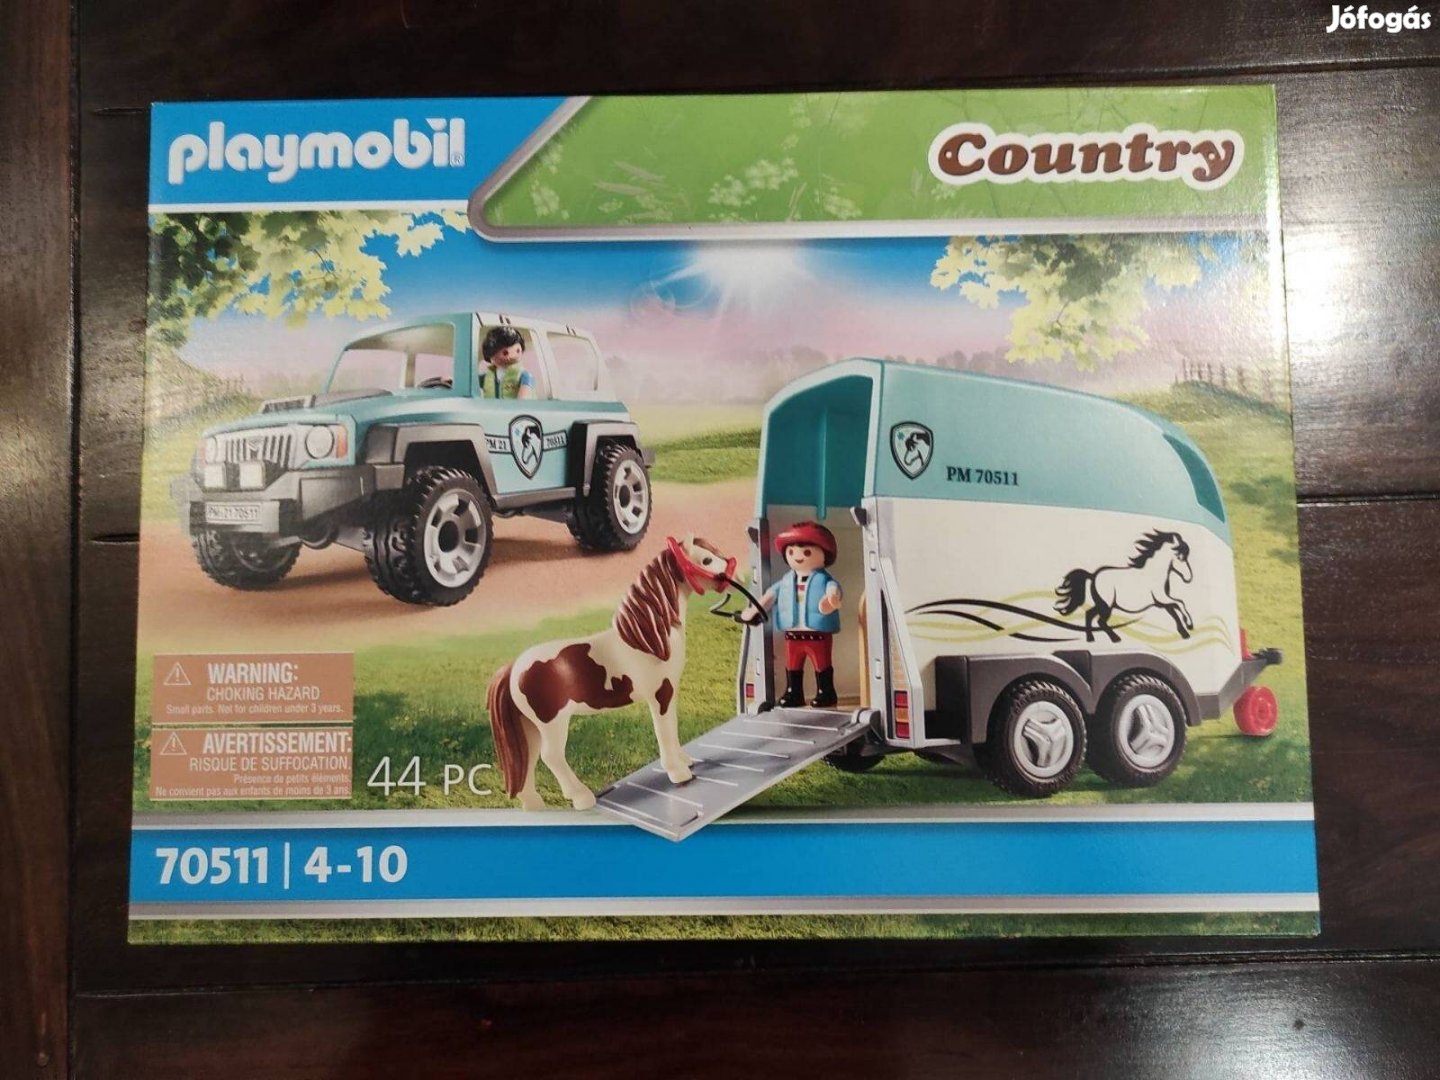 Playmobil terepjáró pónilószállítóval 70511